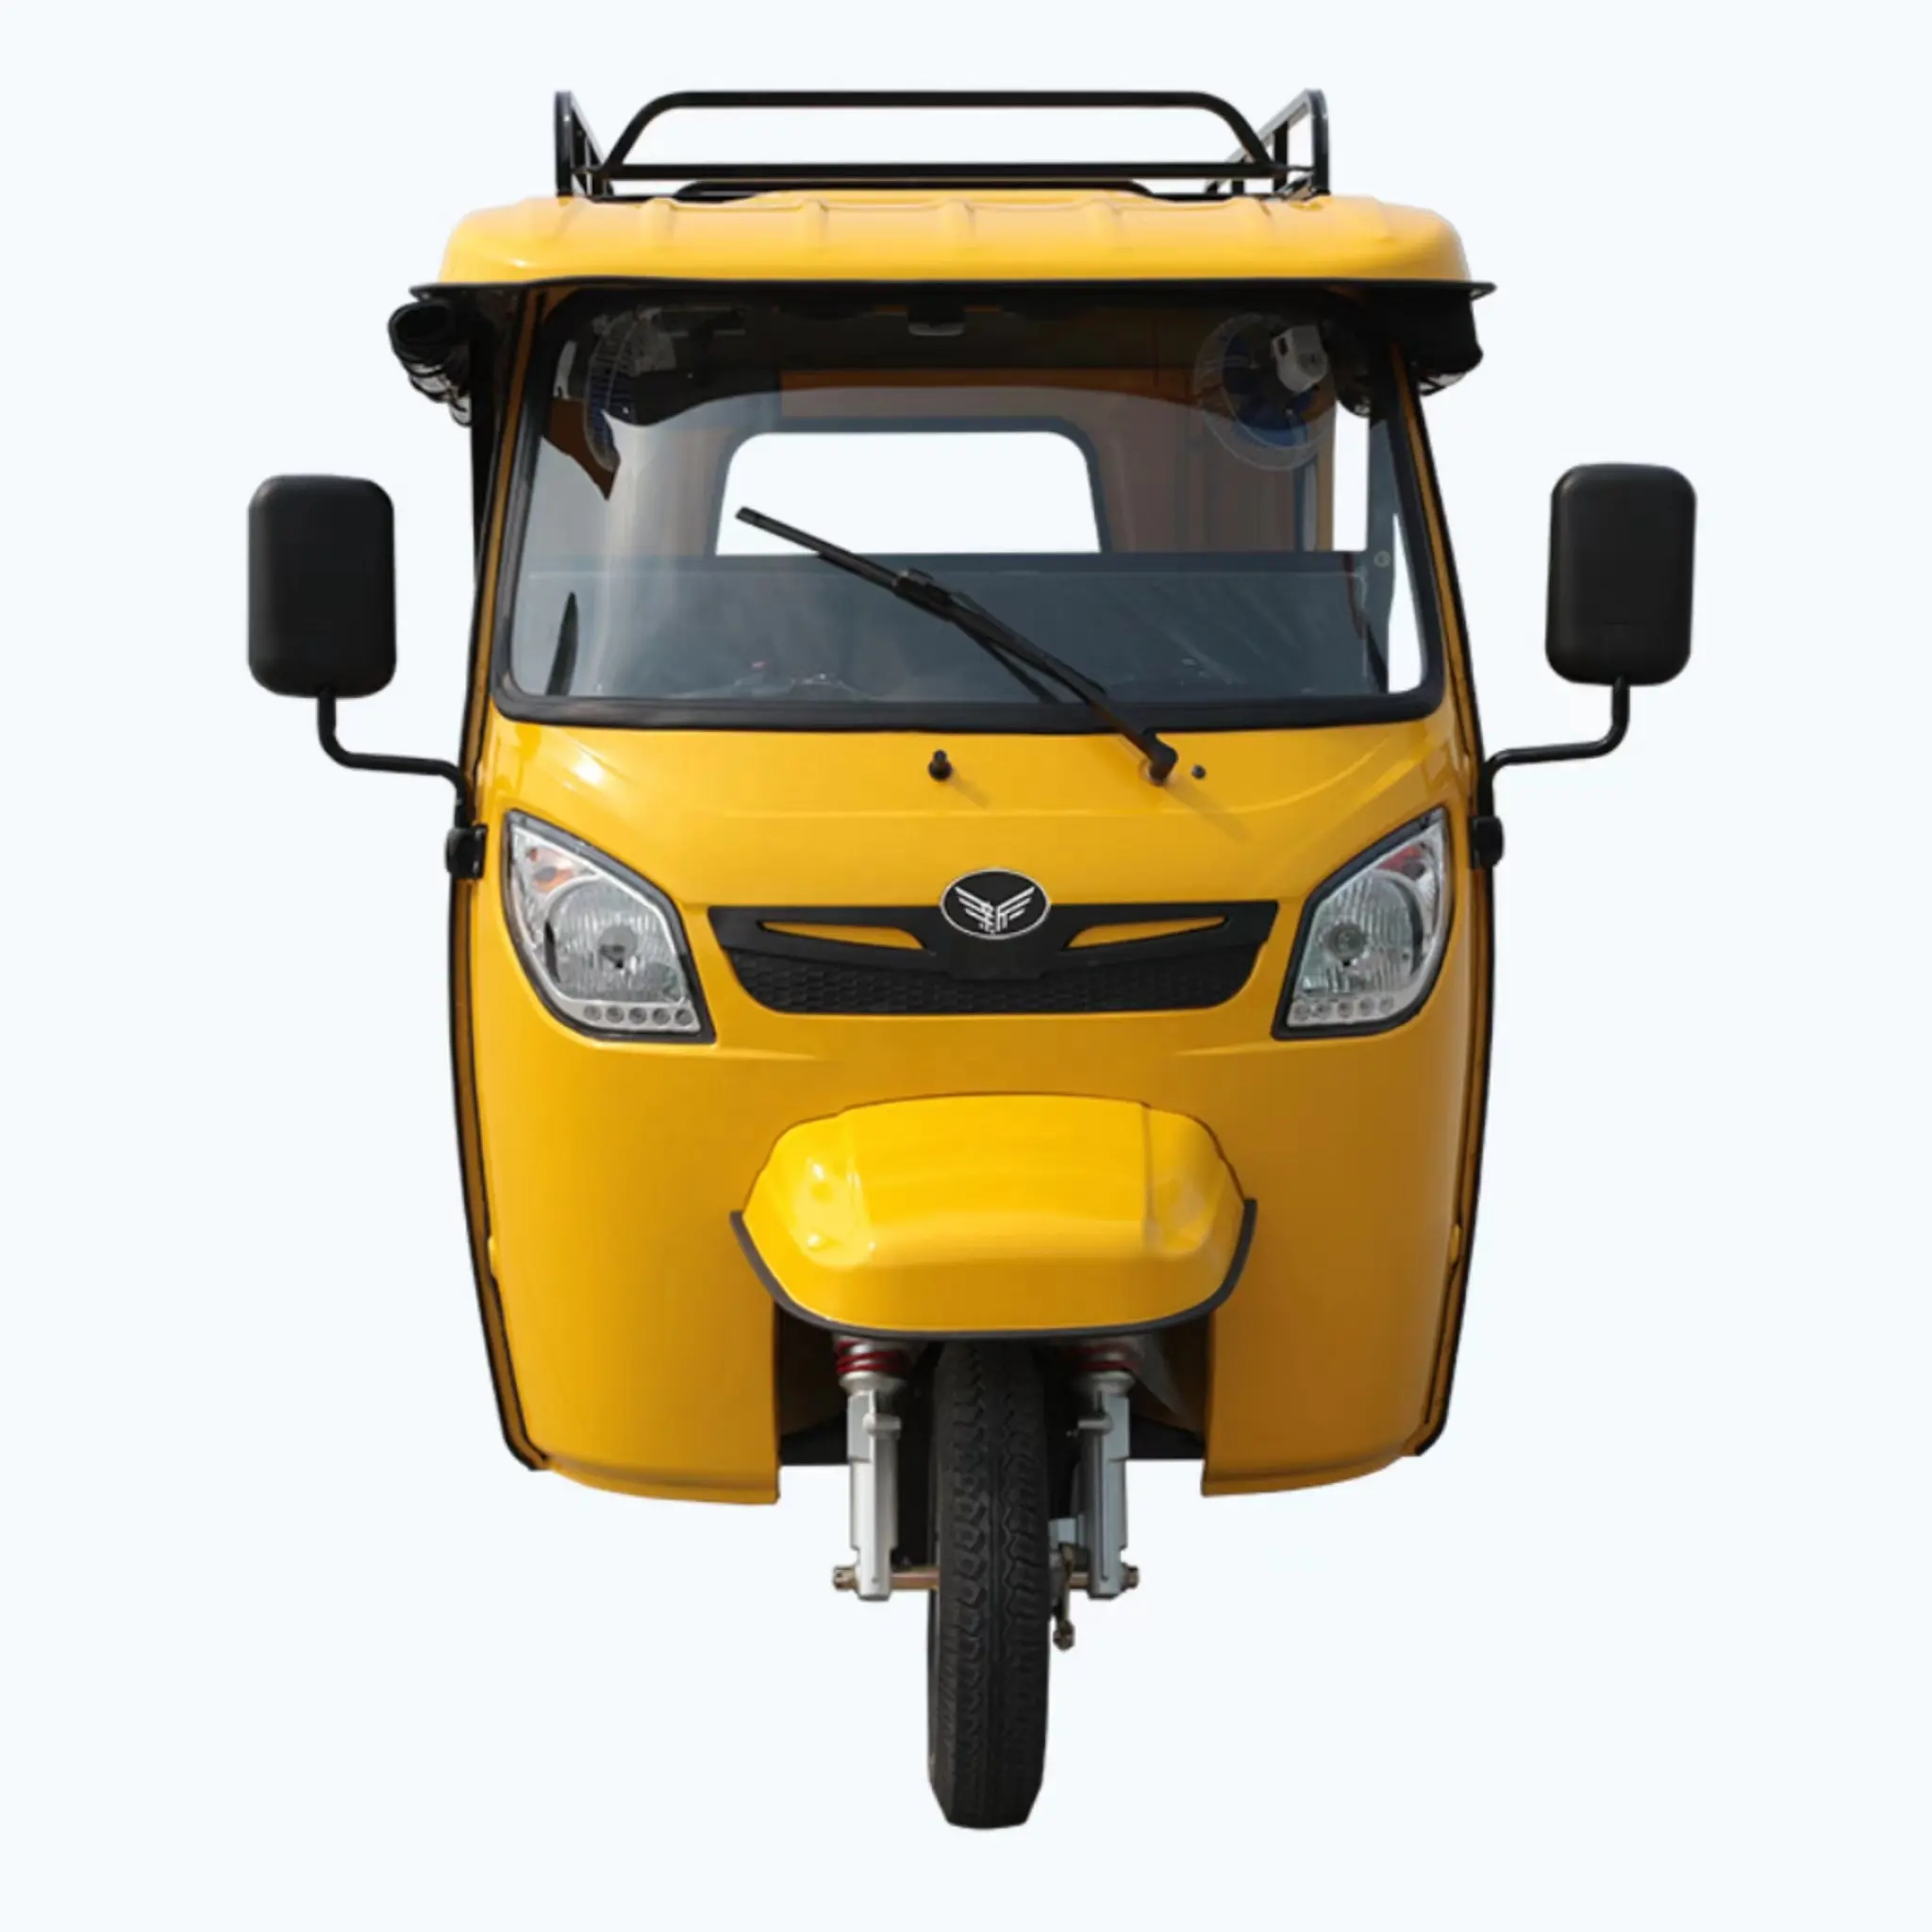 Vendita veloce di moto 3 ruote cabina chiusa per Bajaj Tuk Tuk Tvs Auto Rickshaws triciclo motorizzato a buon mercato